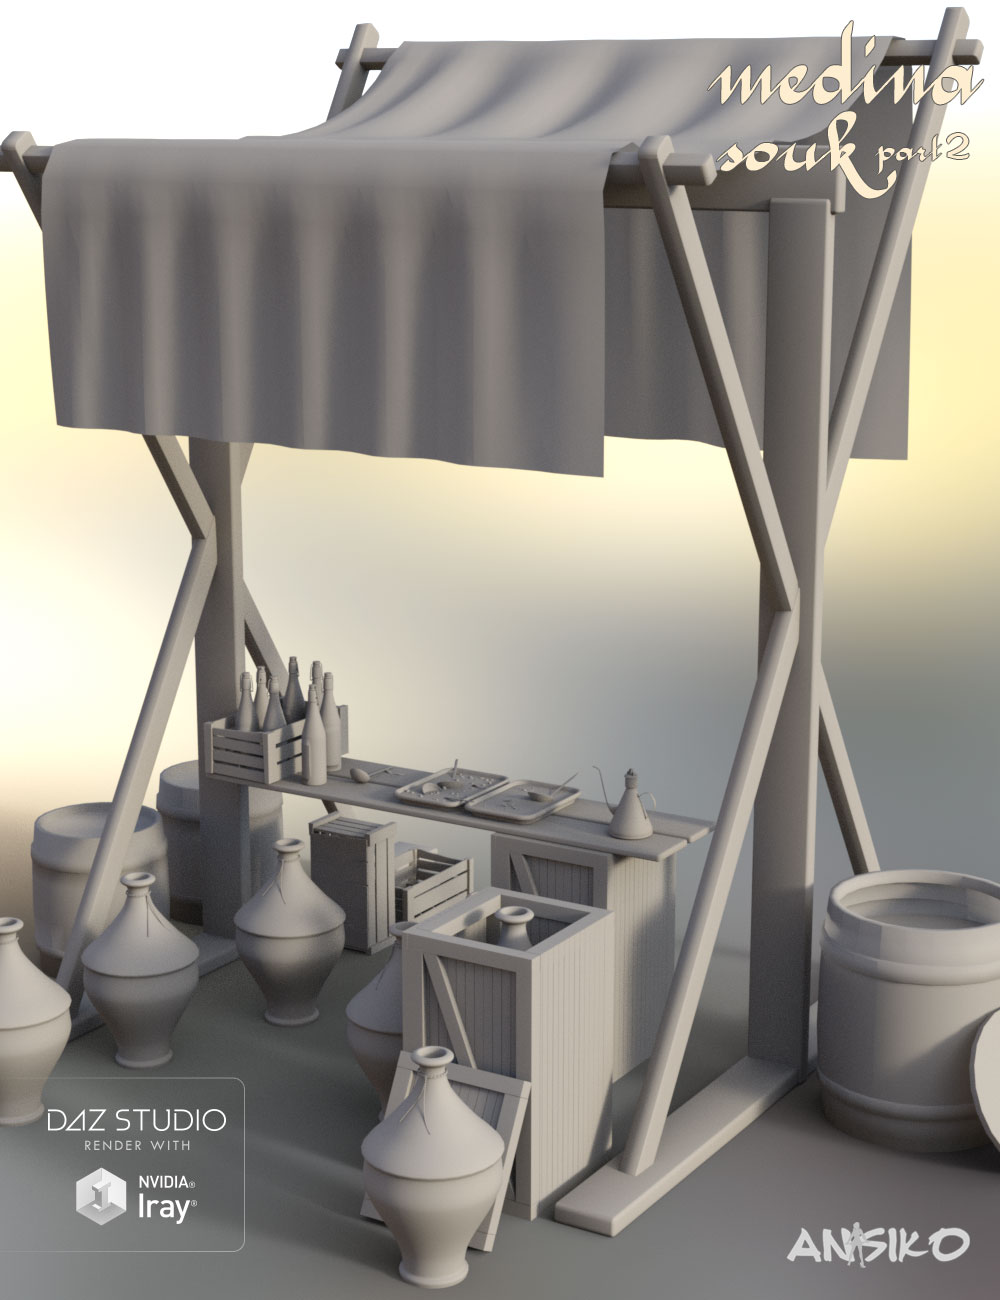 Medina Souk 2 by: Ansiko, 3D Models by Daz 3D